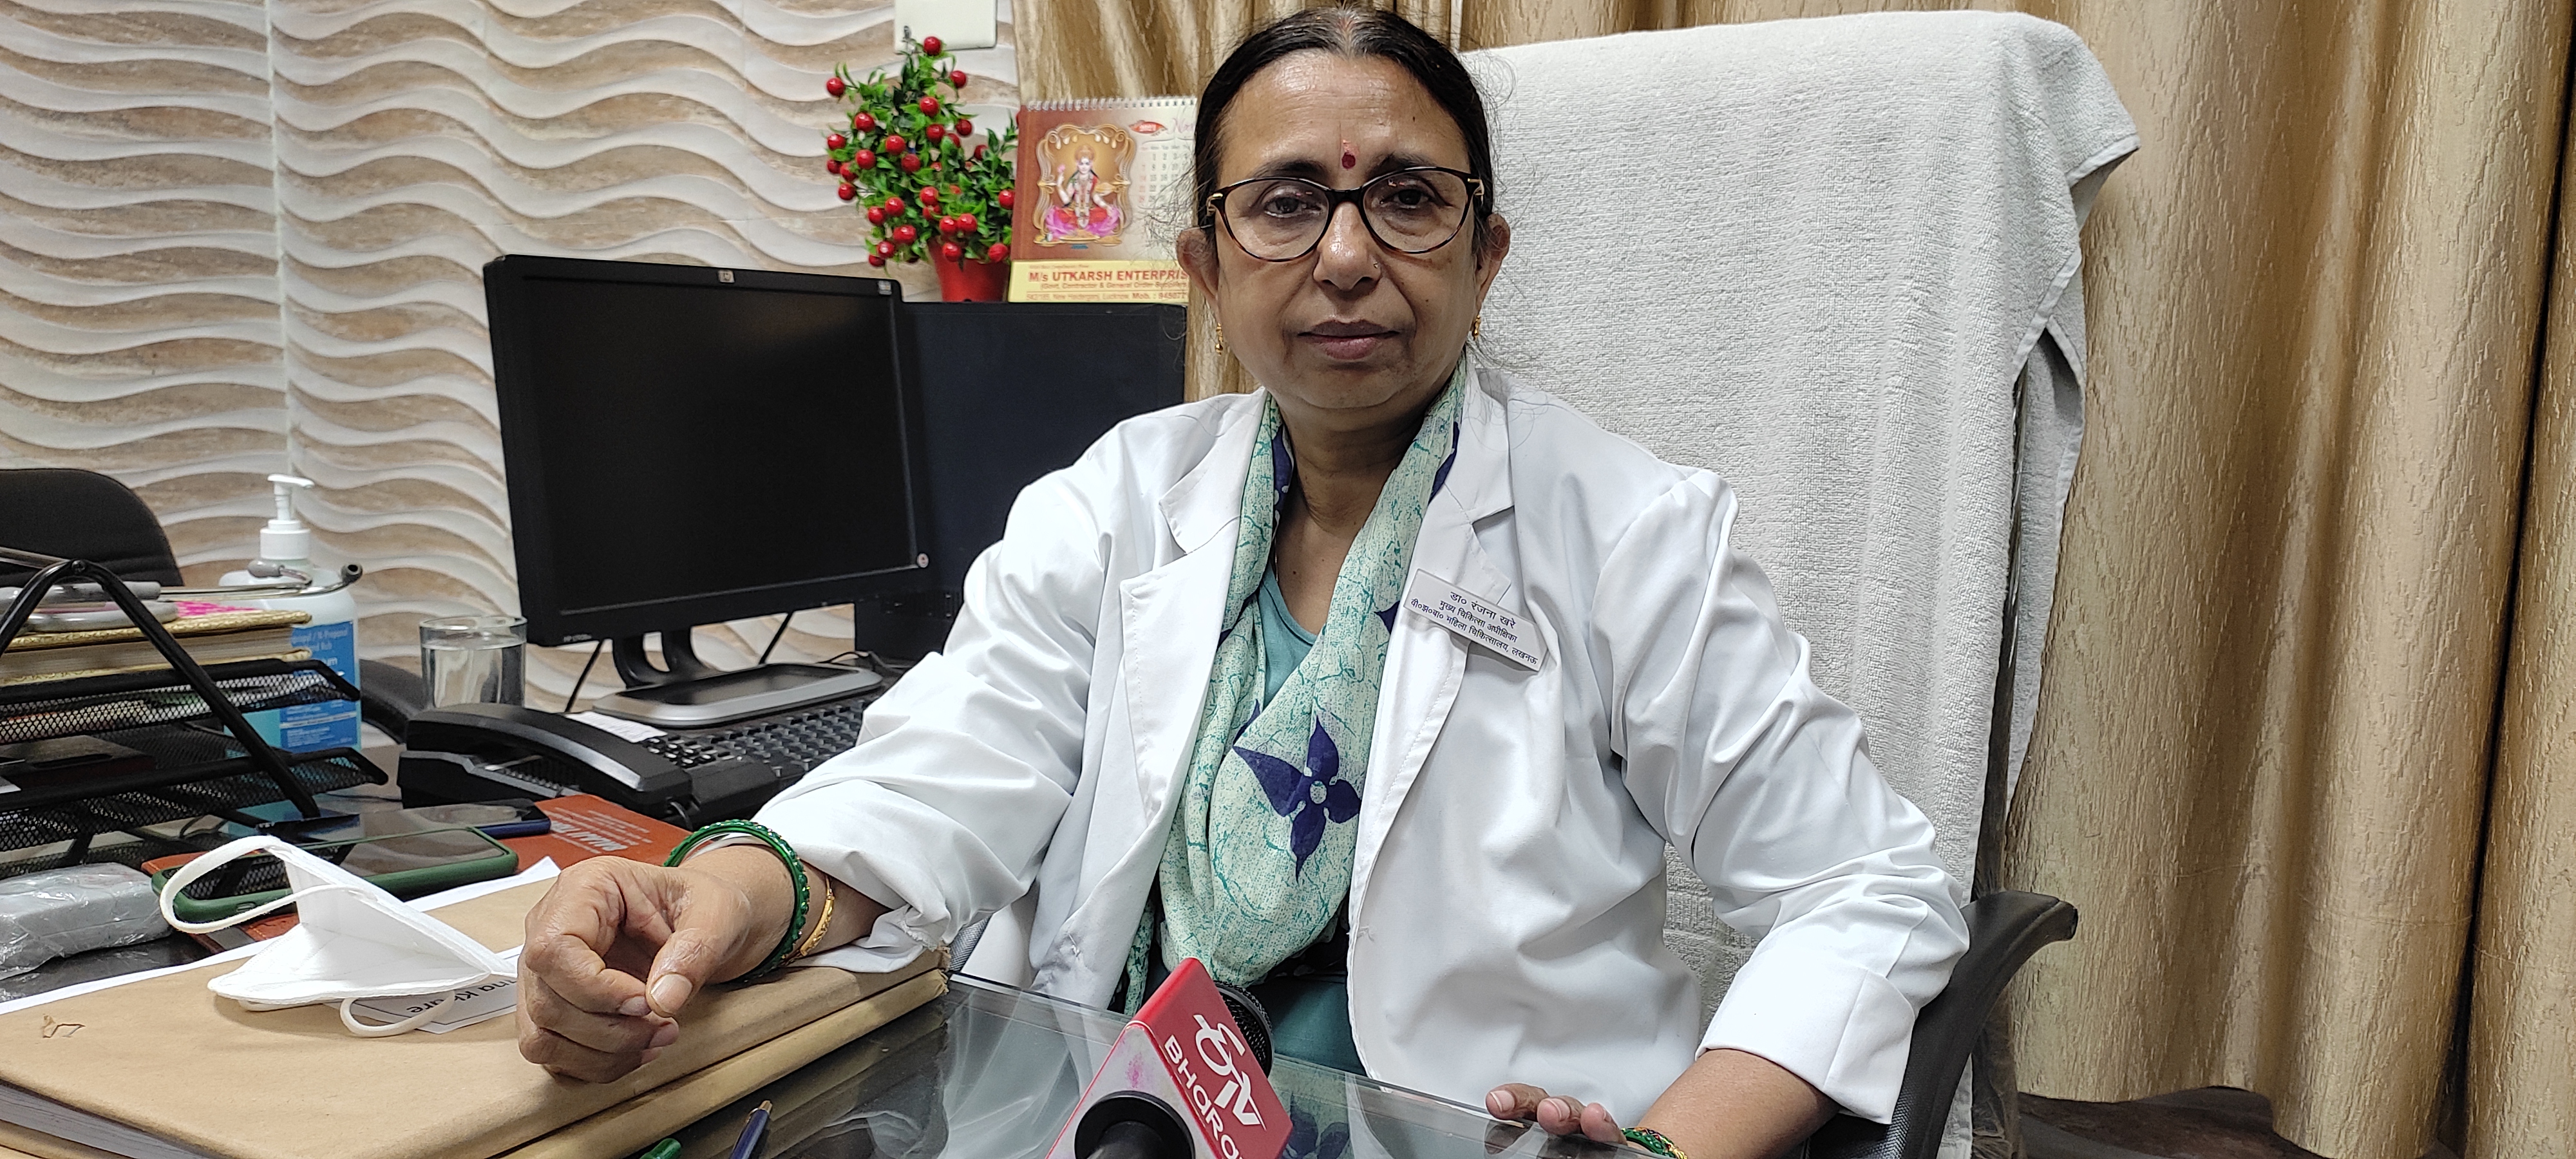 डॉ. रंजना खरे सीएमएस, वीरांगना झलकारीबाई महिला अस्पताल